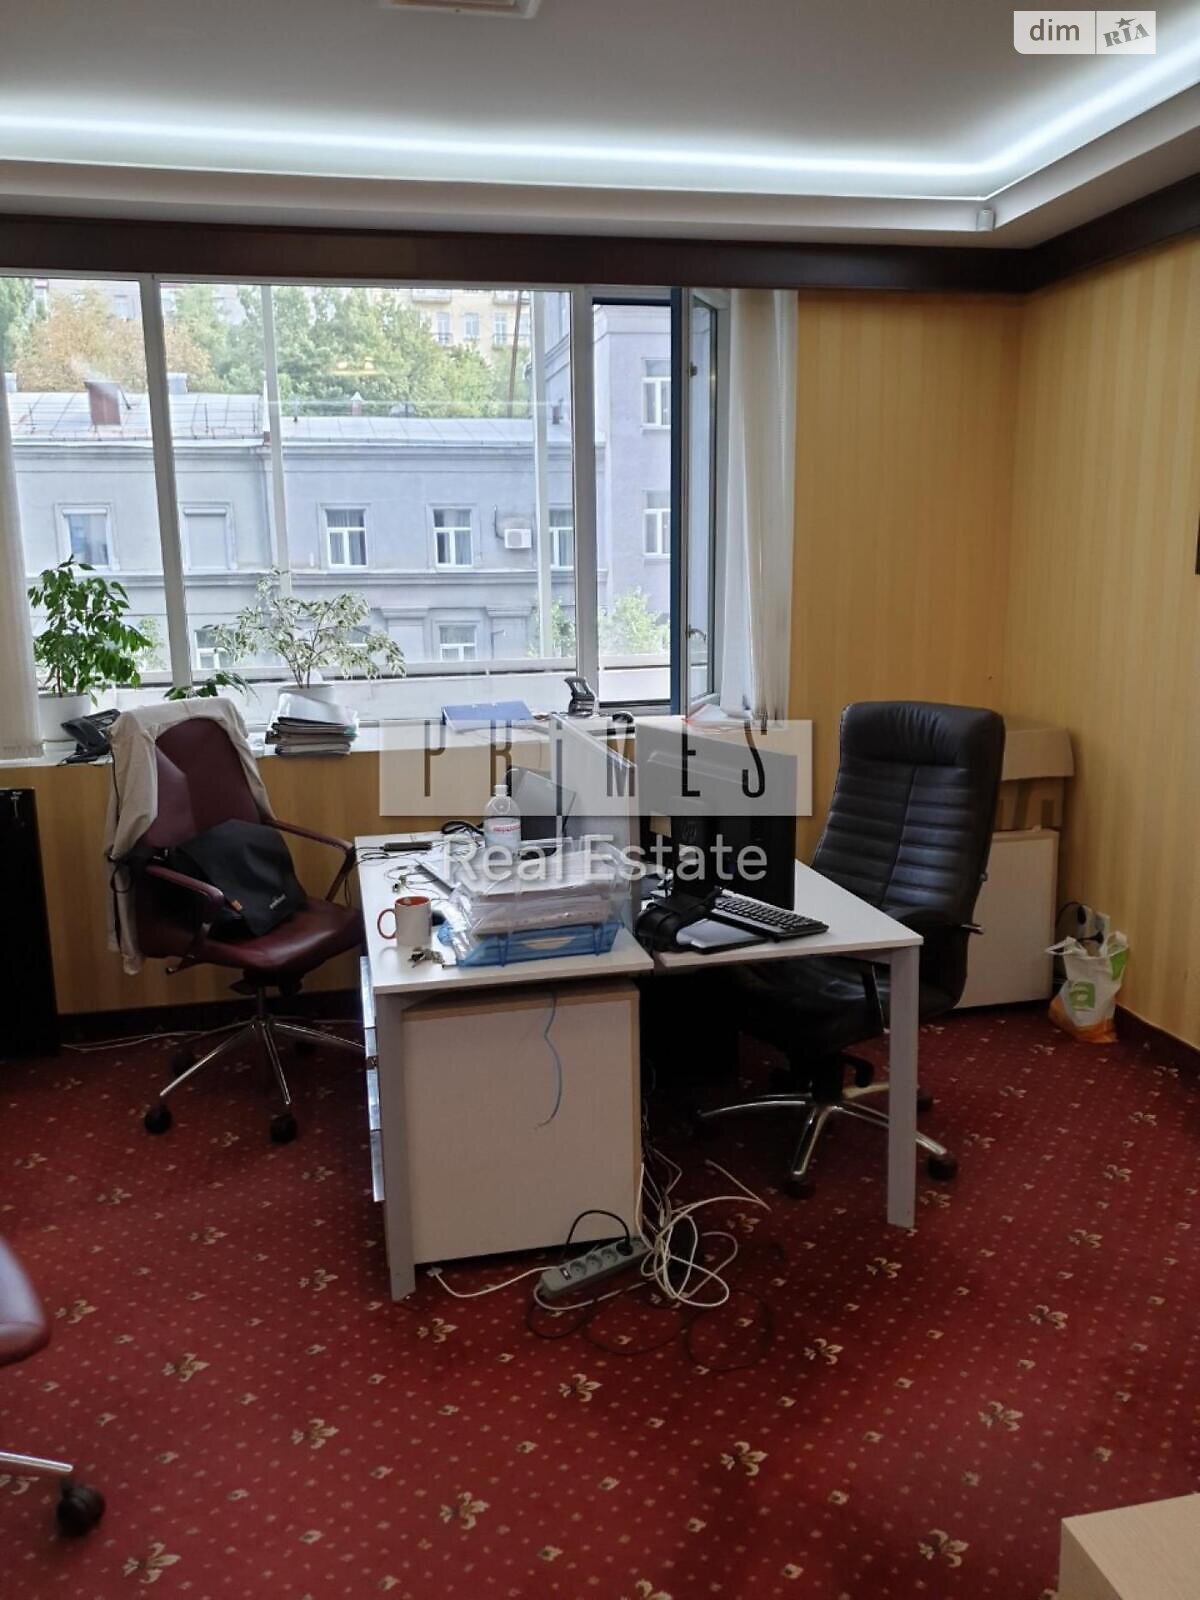 Аренда офисного помещения в Киеве, Шелковичная улица 42/44, помещений - 6, этаж - 5 фото 1